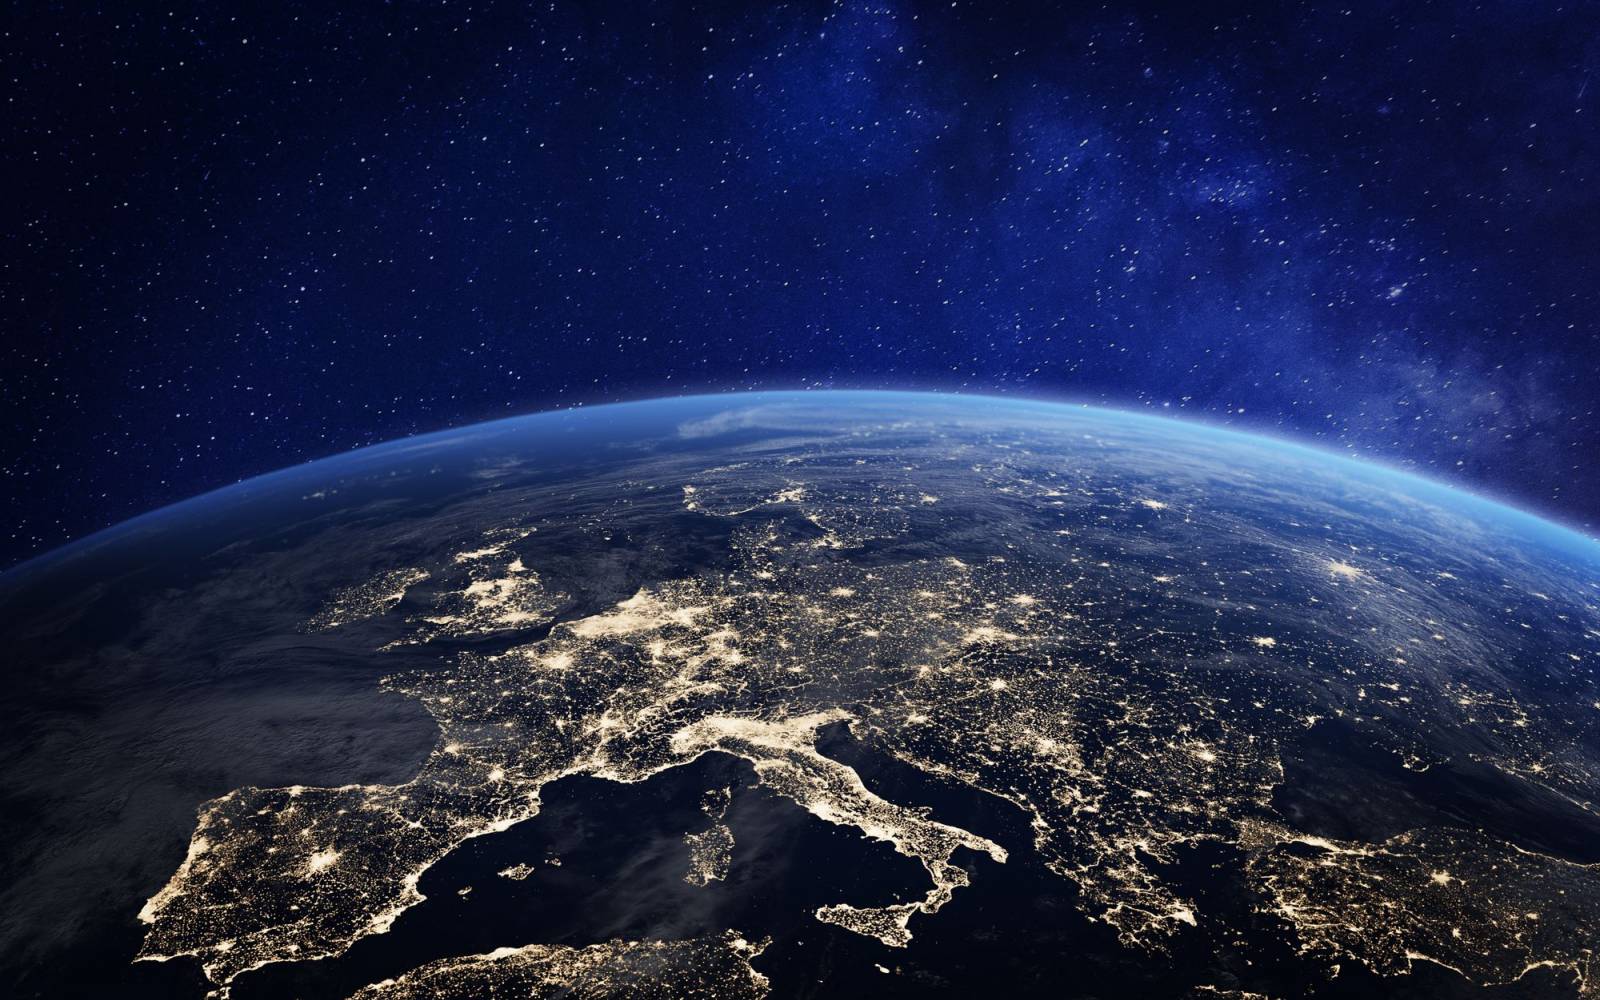 Europa bei Nacht, vom Weltall aus gesehen